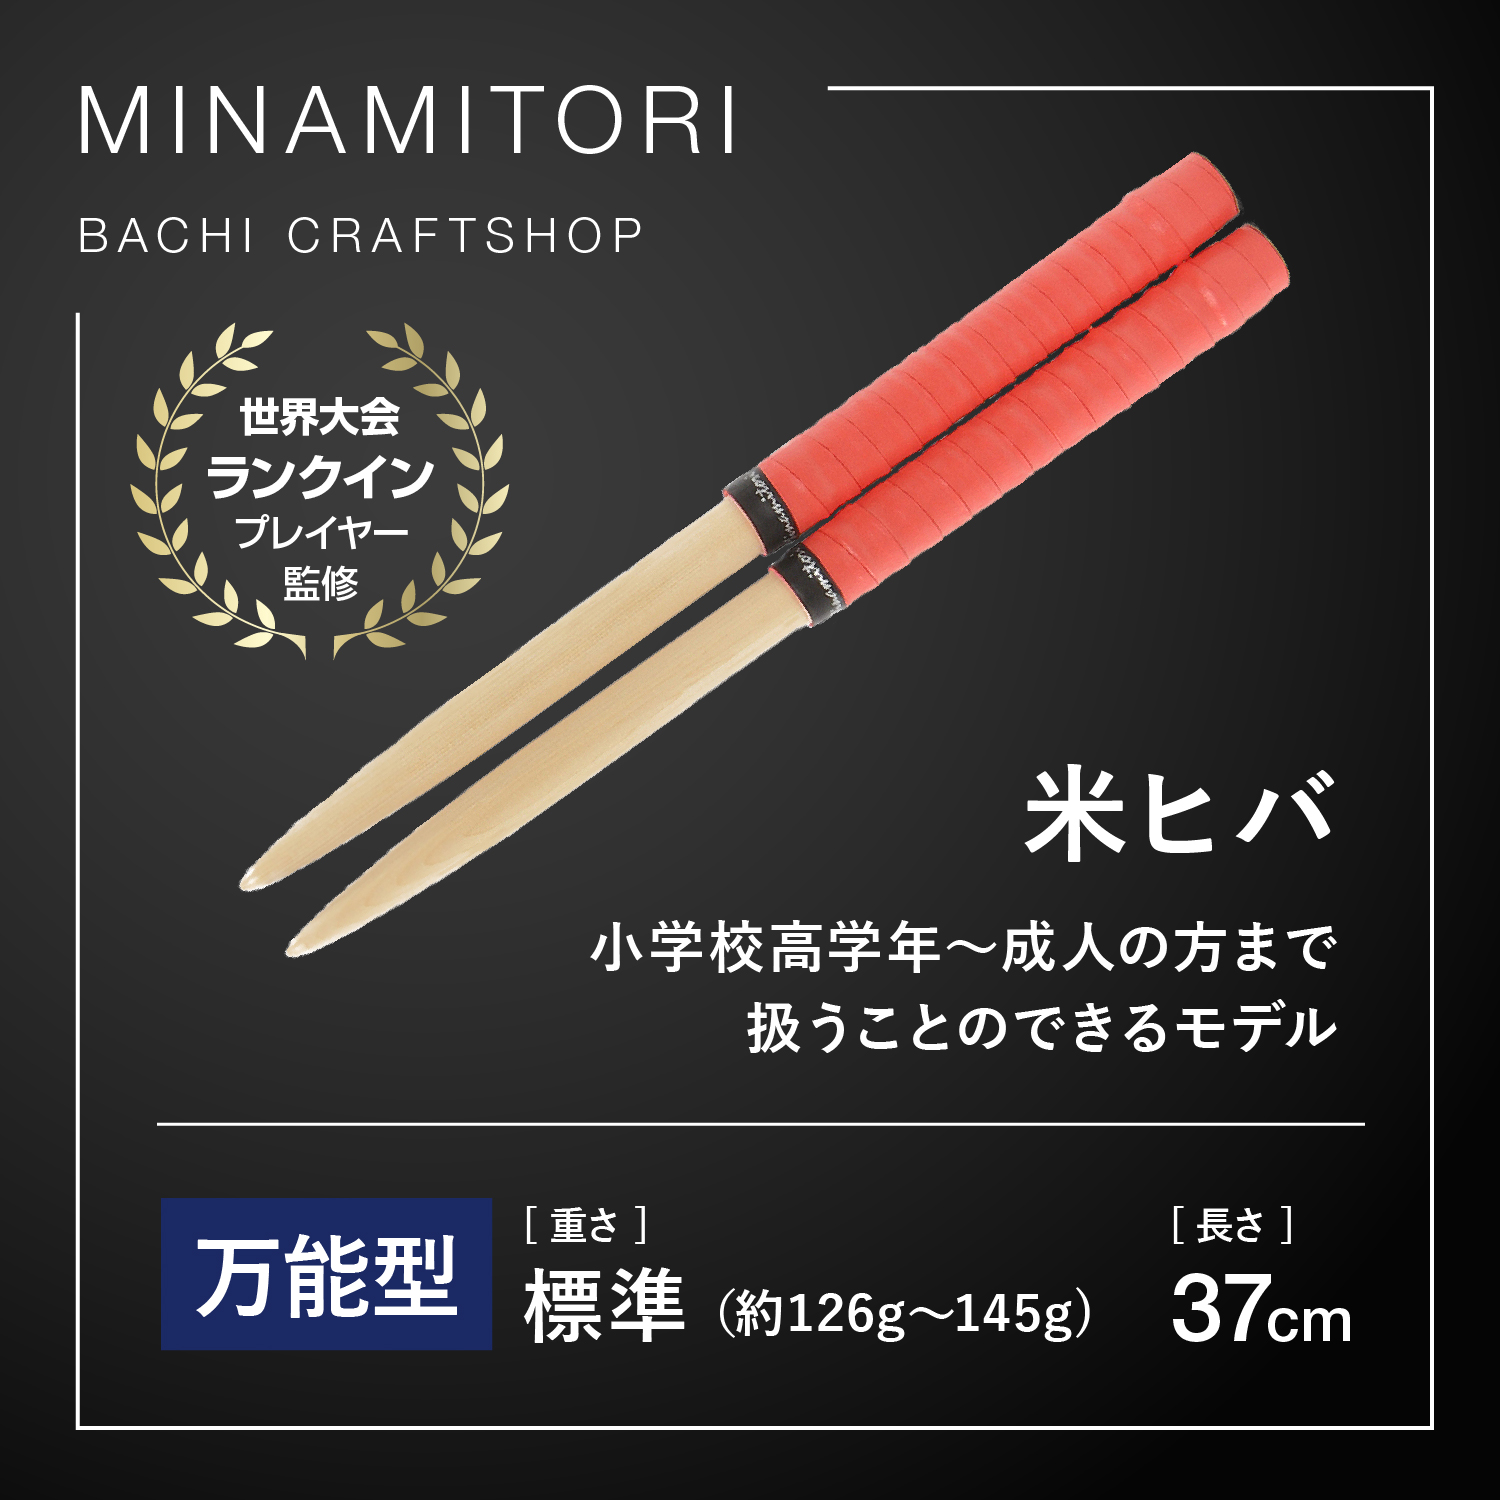 Minamitoriバチ工房 マイバチ 米ヒバ 37cm 重さ:標準 万能型（Nレッド